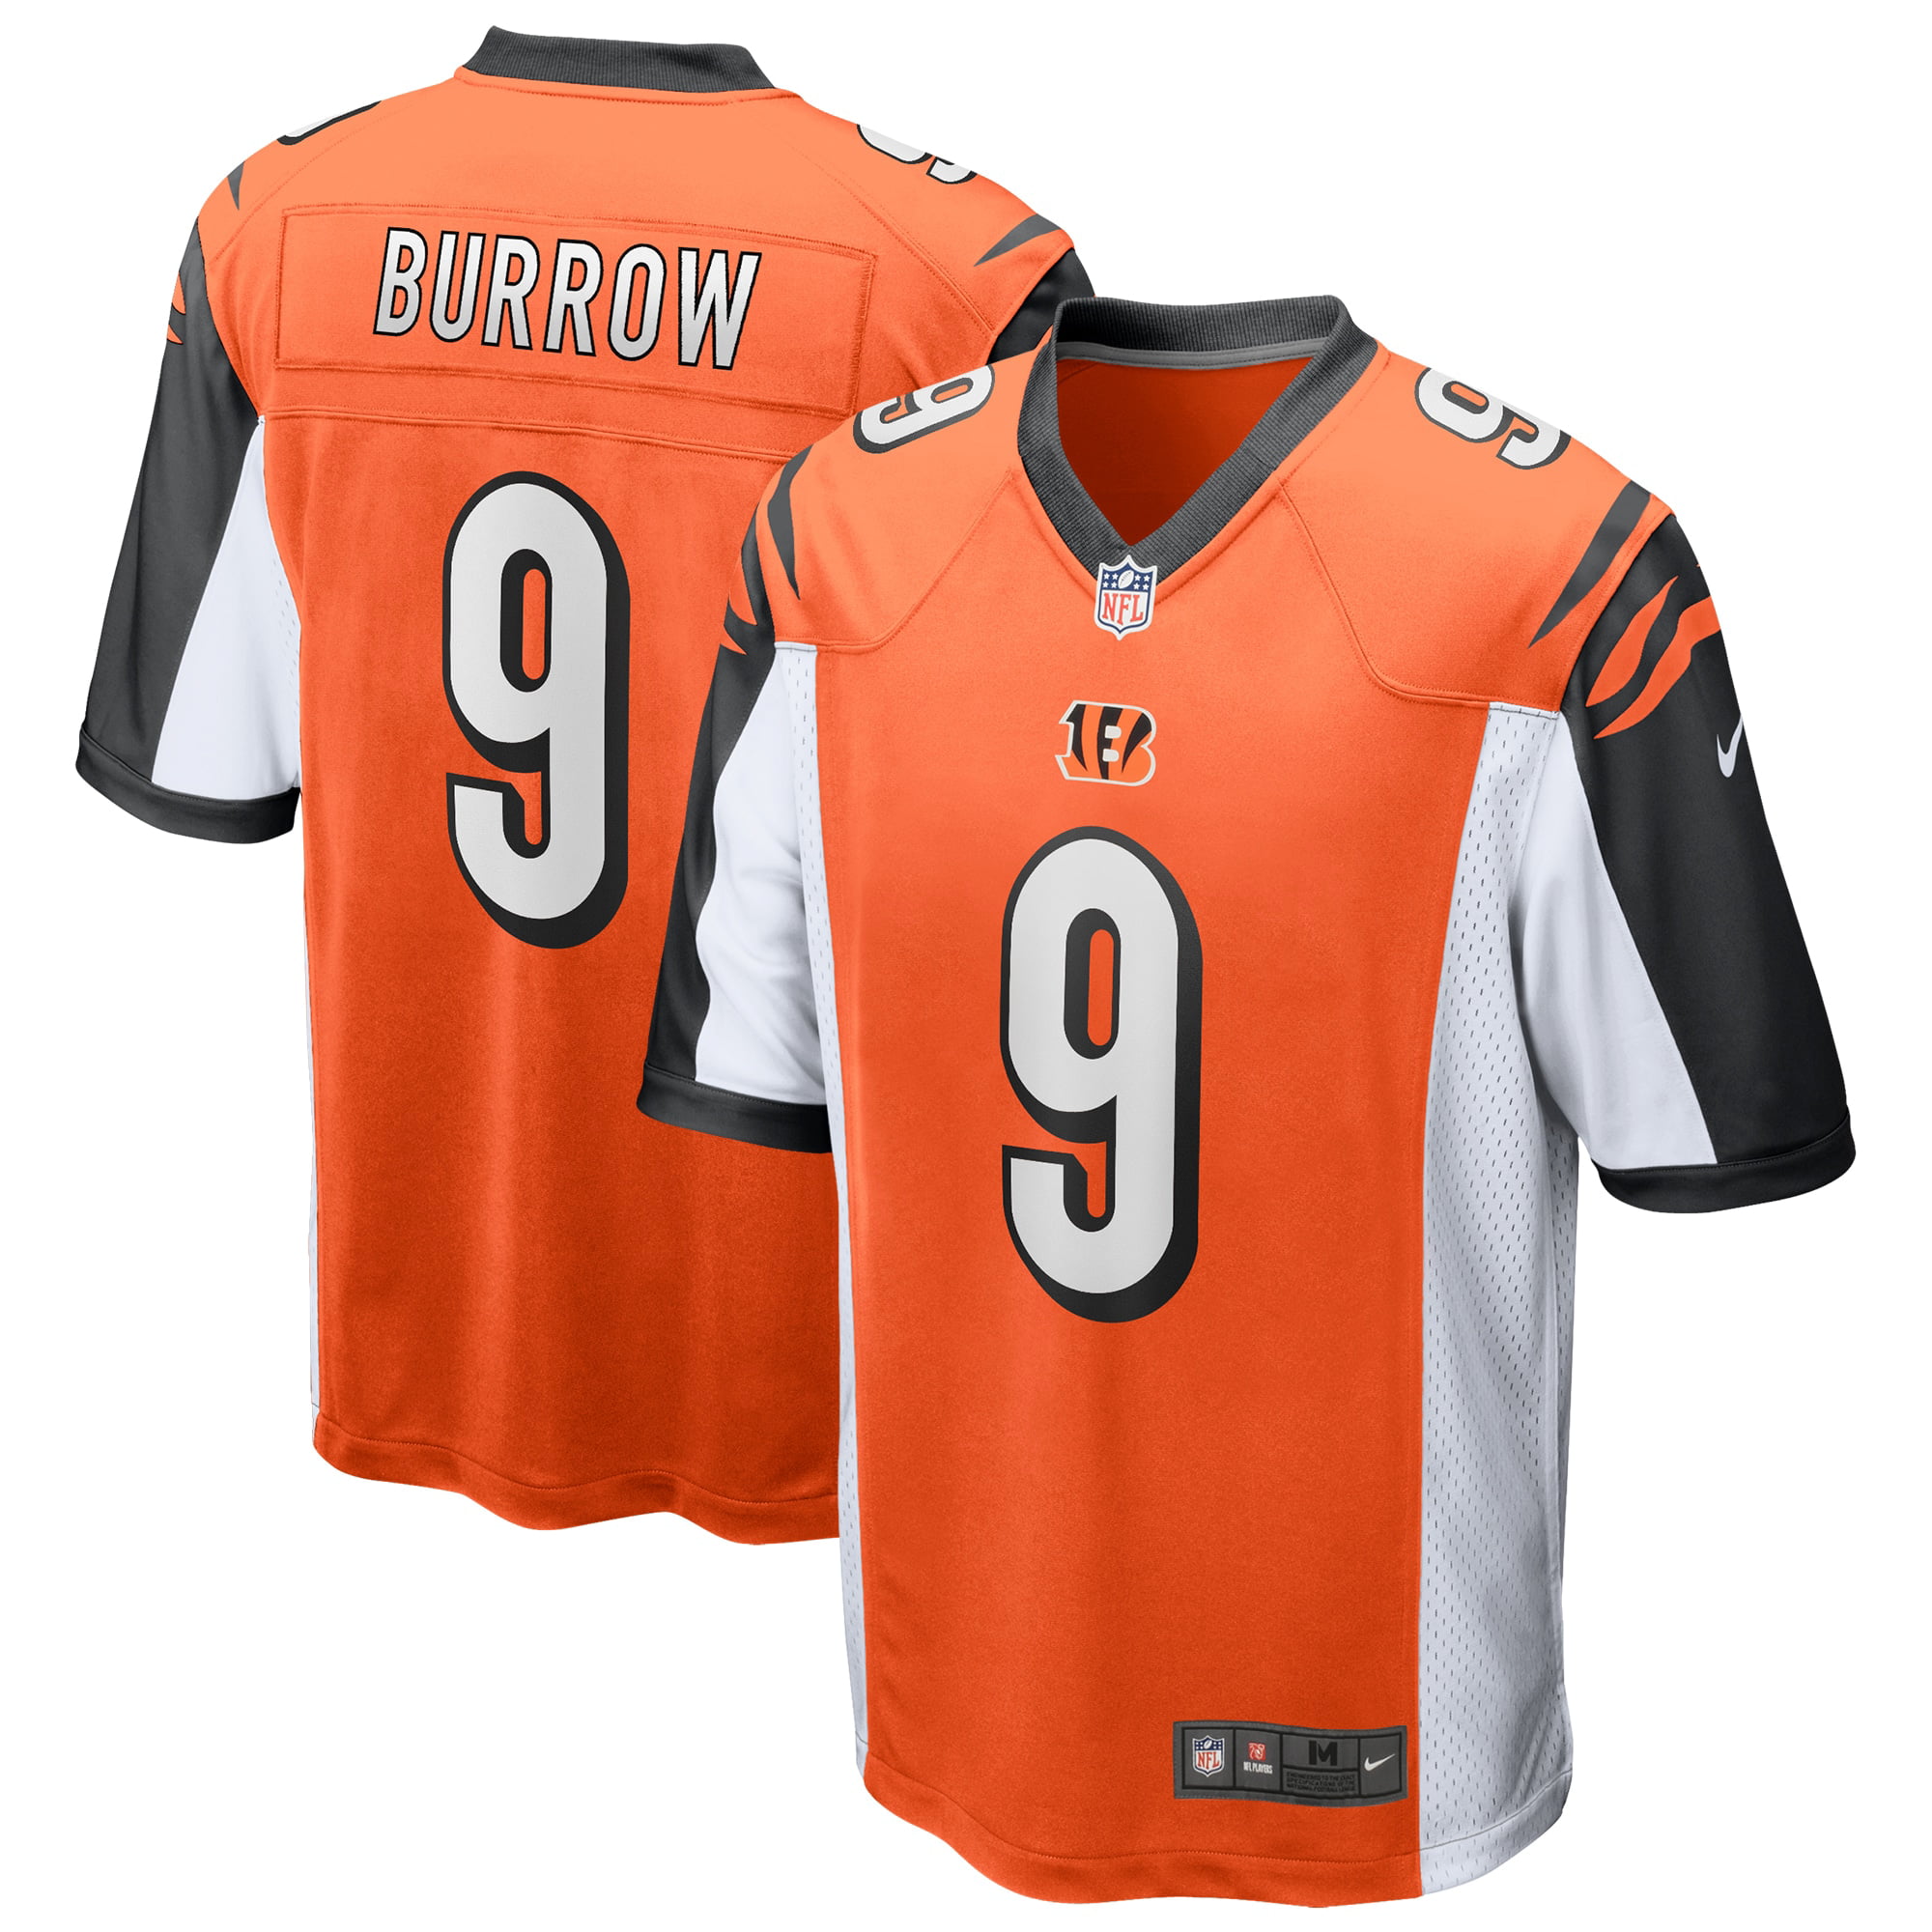 رياضة فروسية Joe Burrow Cincinnati Bengals Nike 2020 NFL Draft First Round Pick Game  Jersey - Orange رياضة فروسية